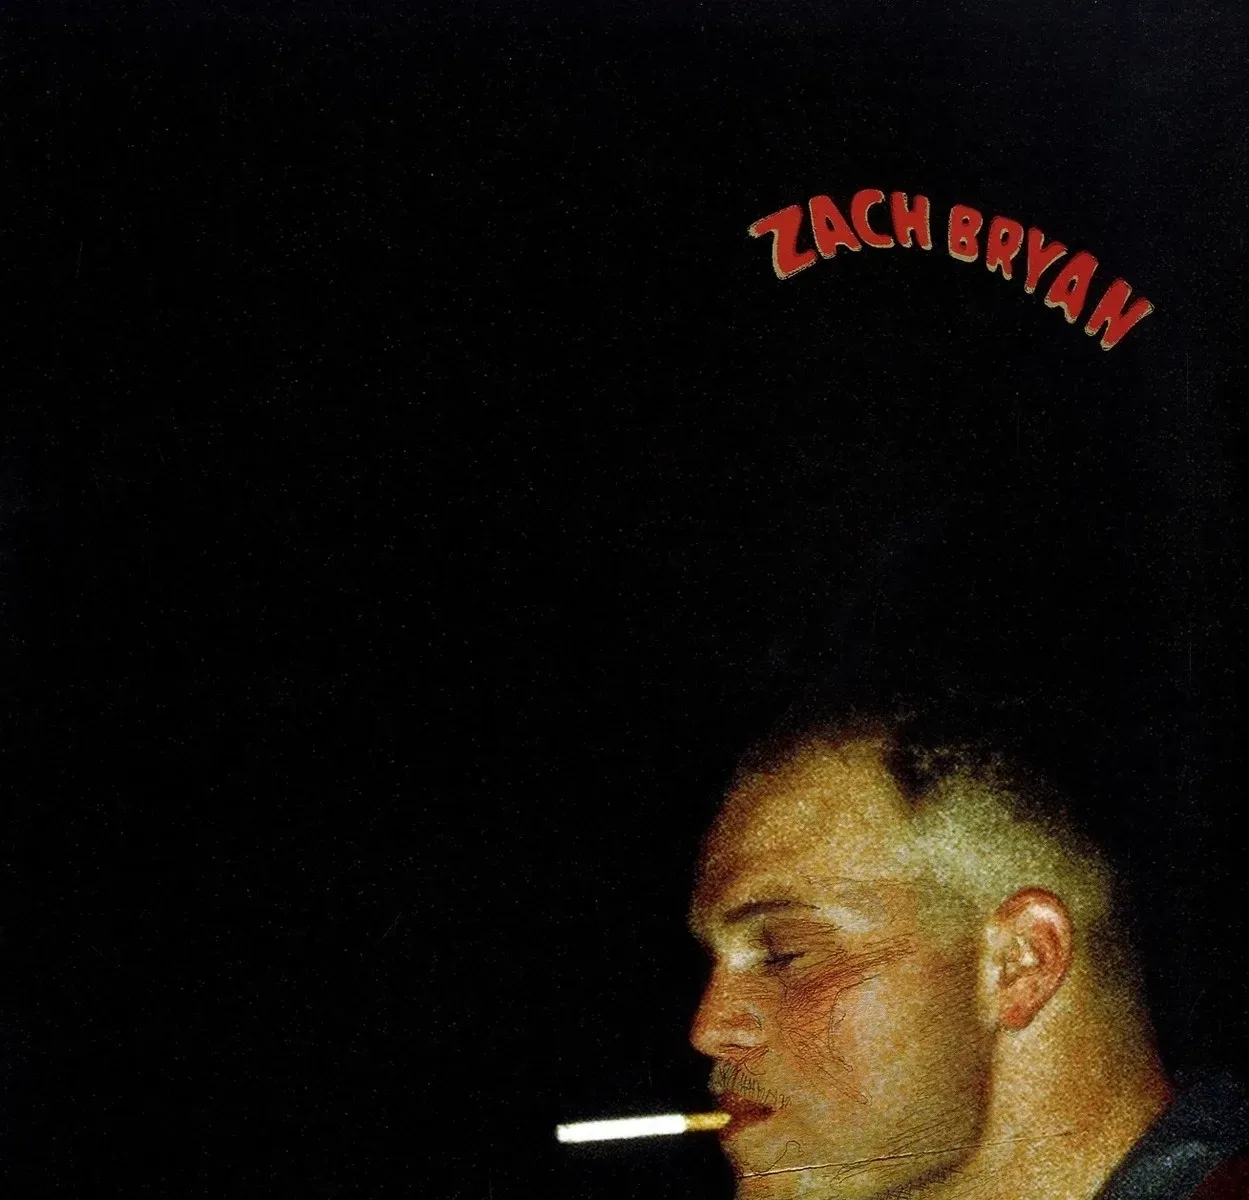 Zach Bryan - Zach Bryan. (LP)